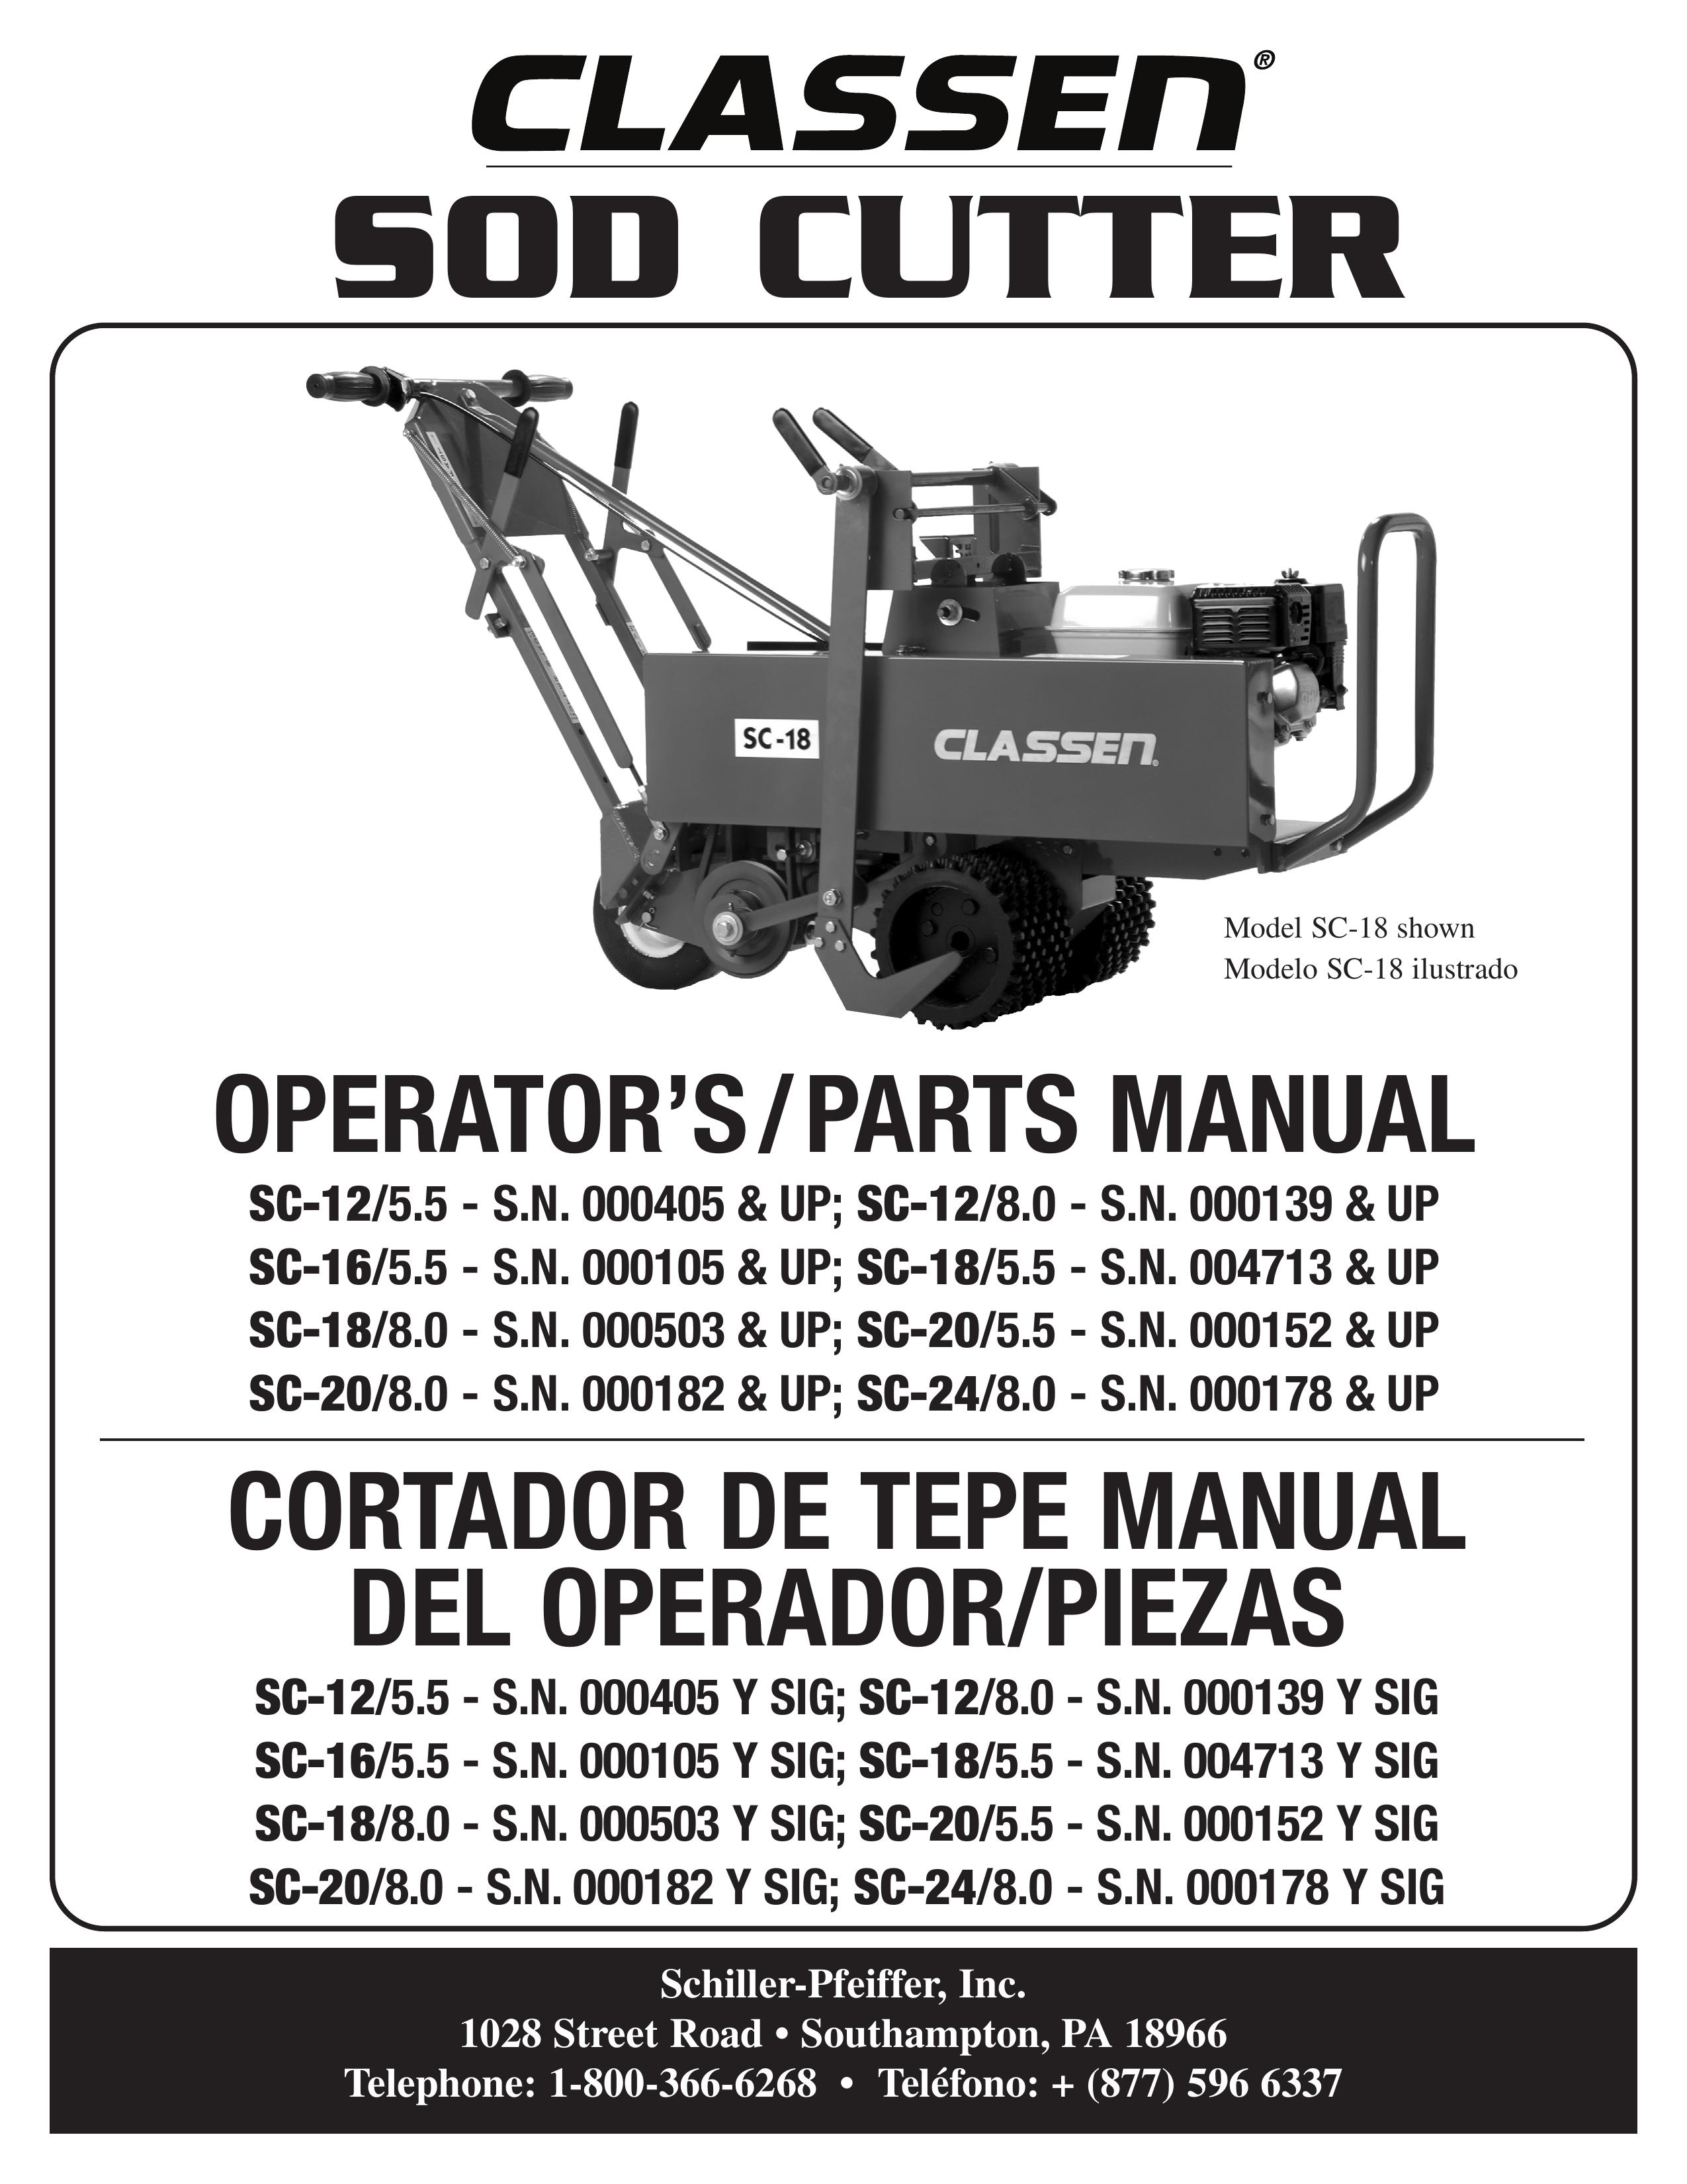 Classen SC-20/8.0 Brush Cutter User Manual